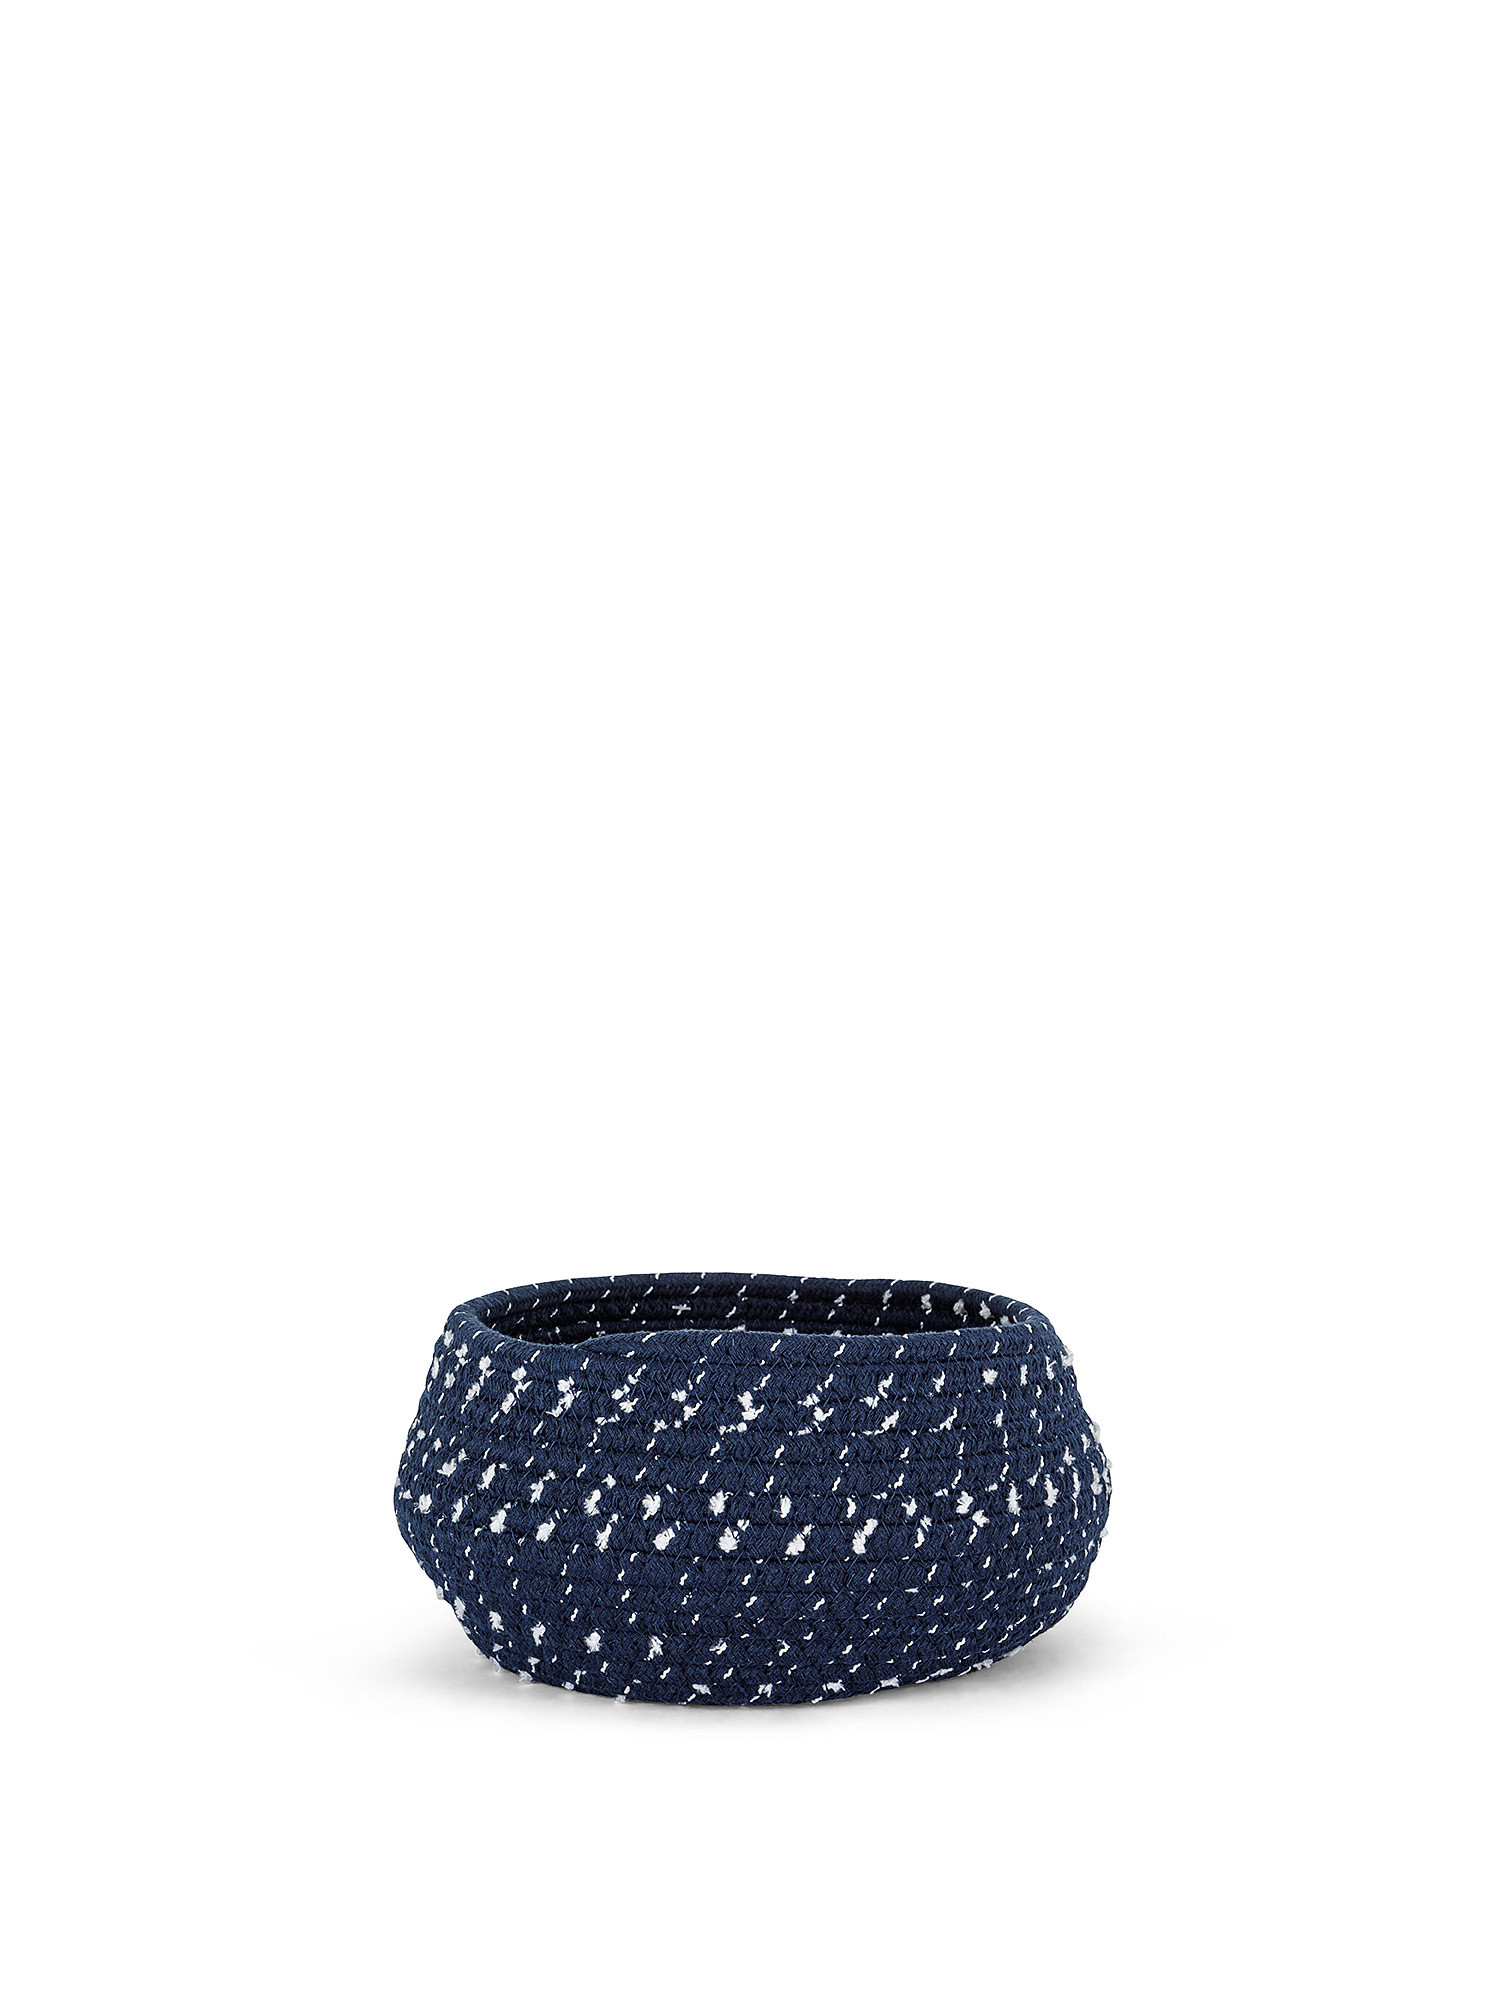 Handmade rope basket, Blue, large image number 0